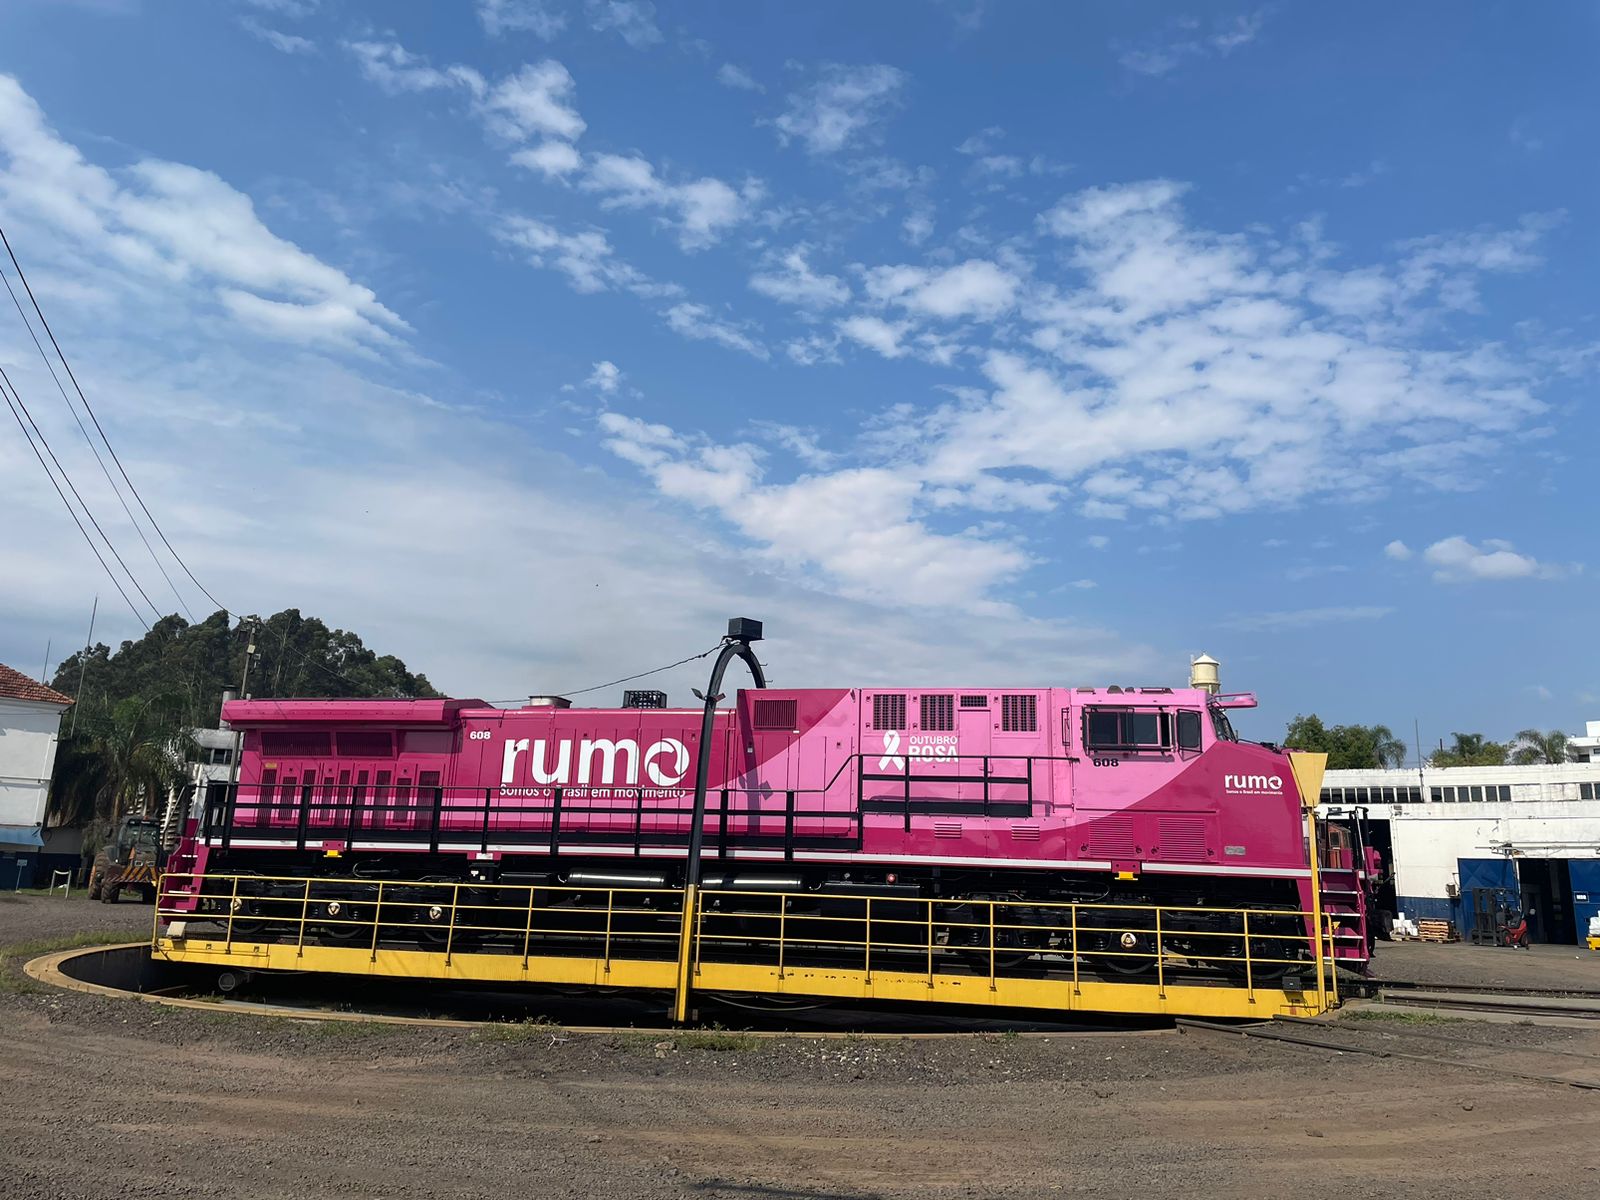 Vagão de trem da Rumo pintado de rosa